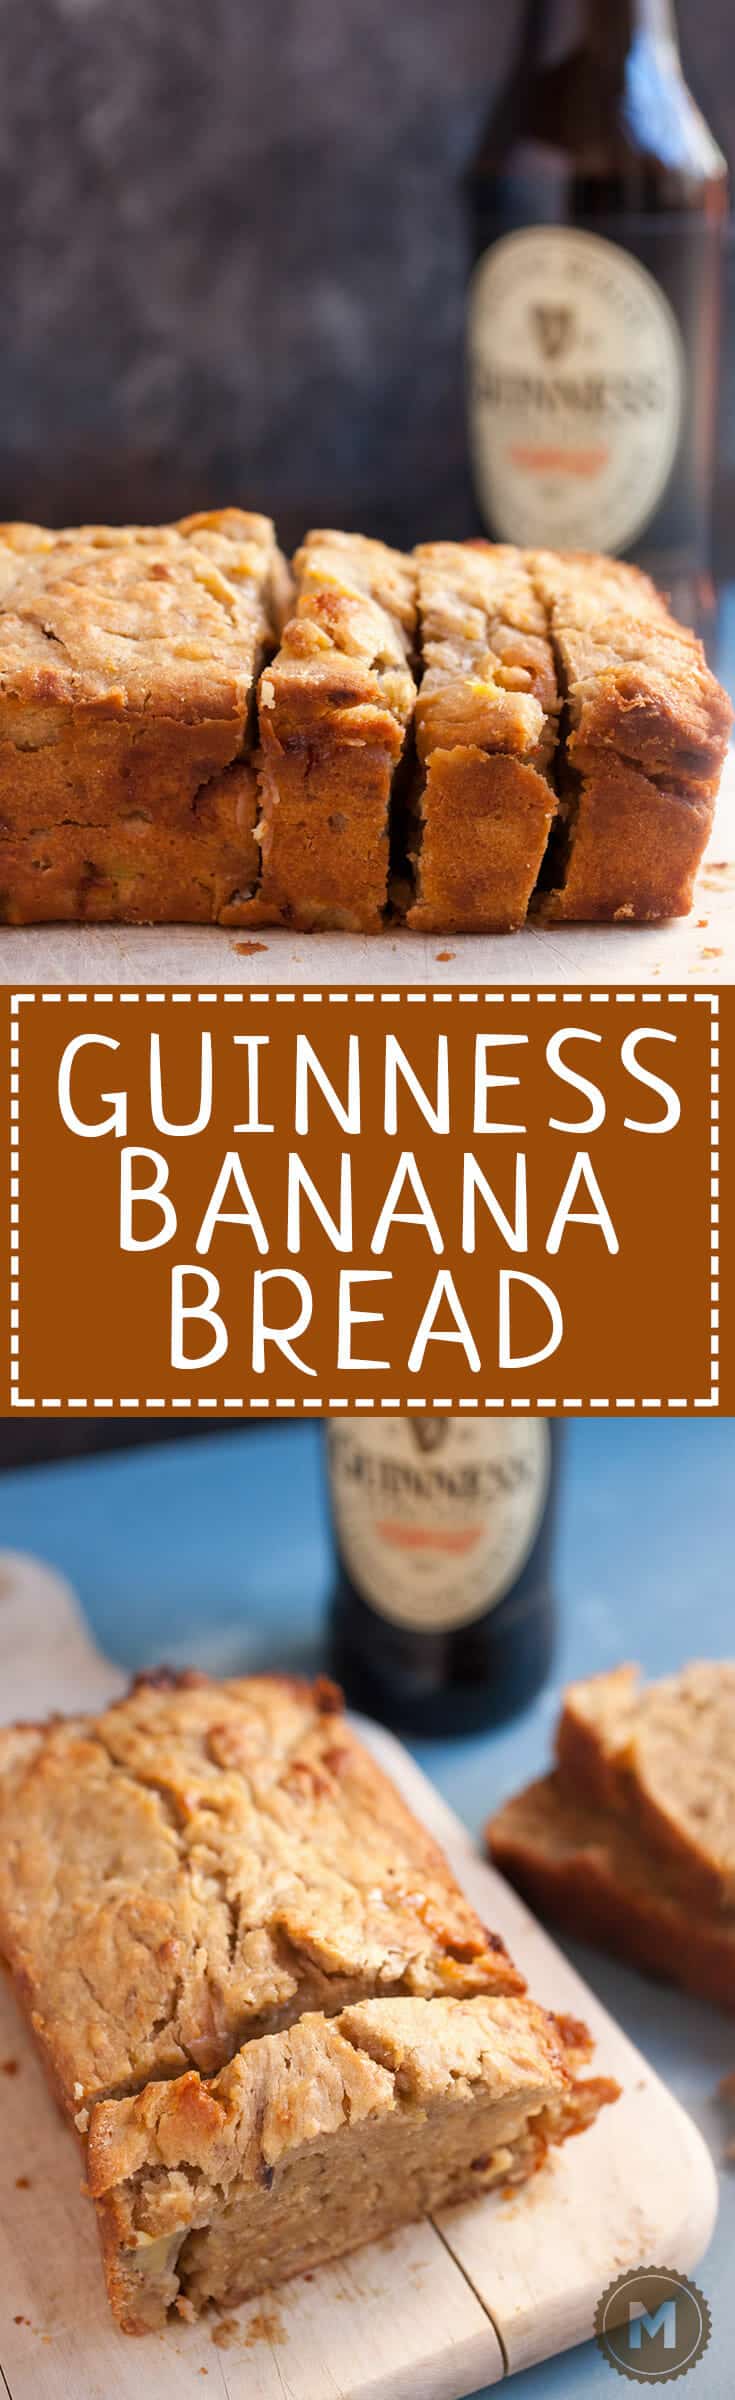 Guinness Banana Beer Bread